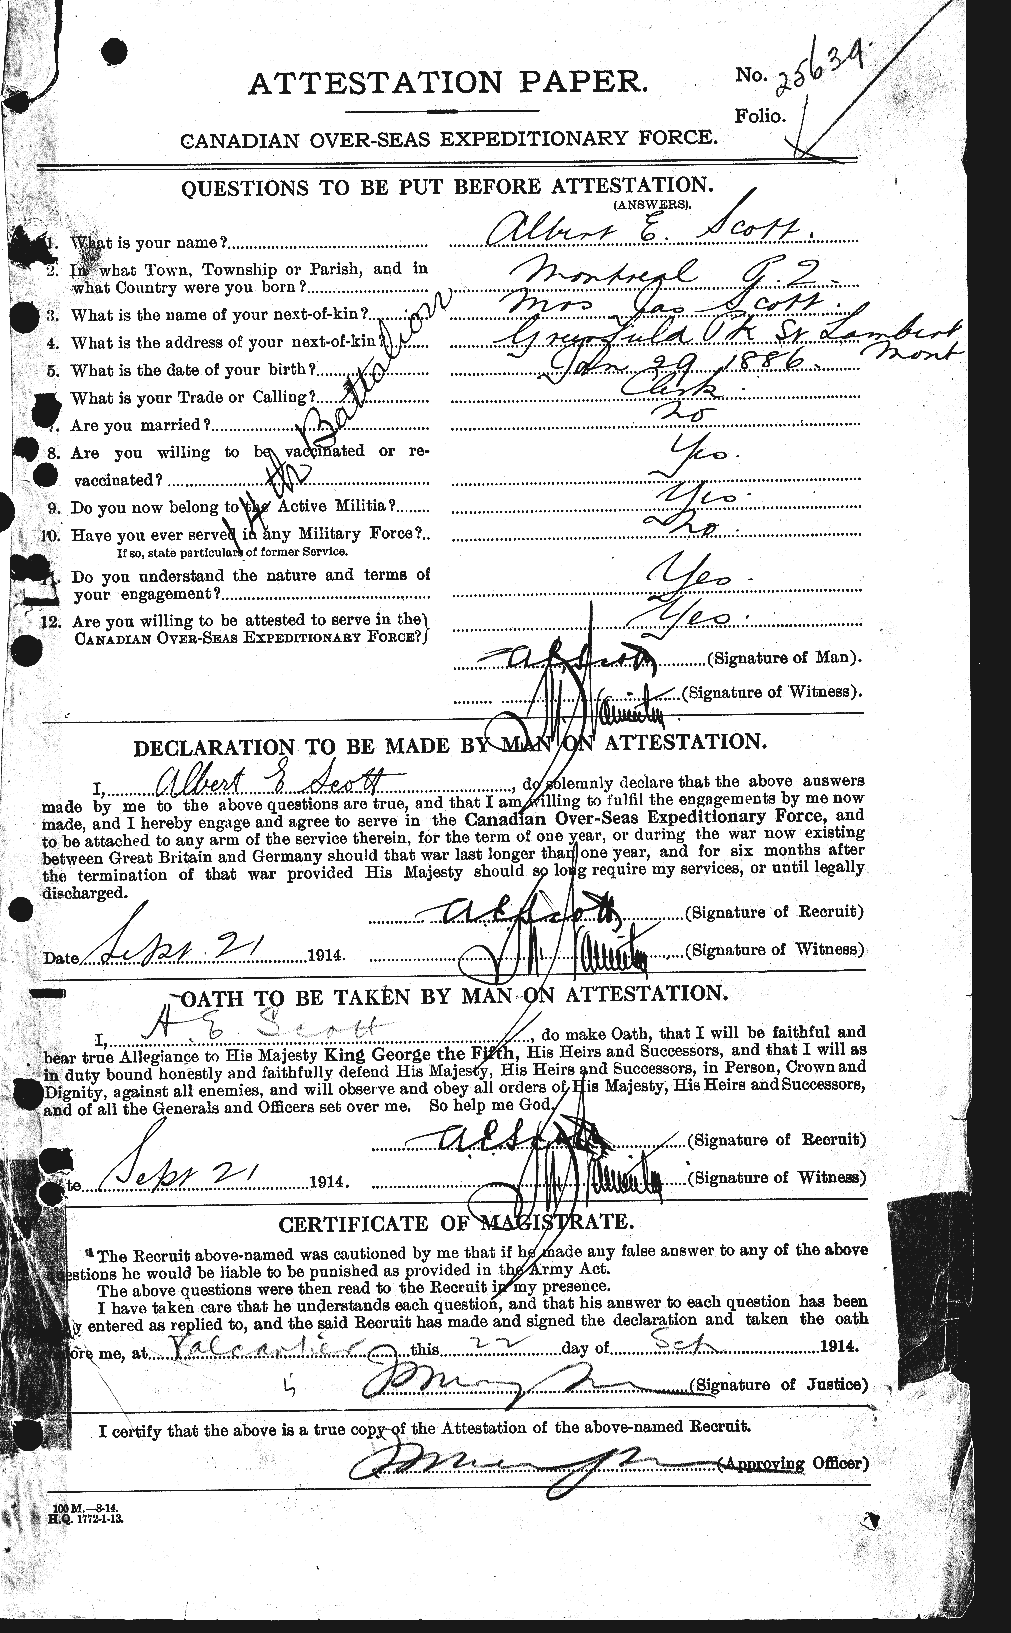 Dossiers du Personnel de la Première Guerre mondiale - CEC 079275a